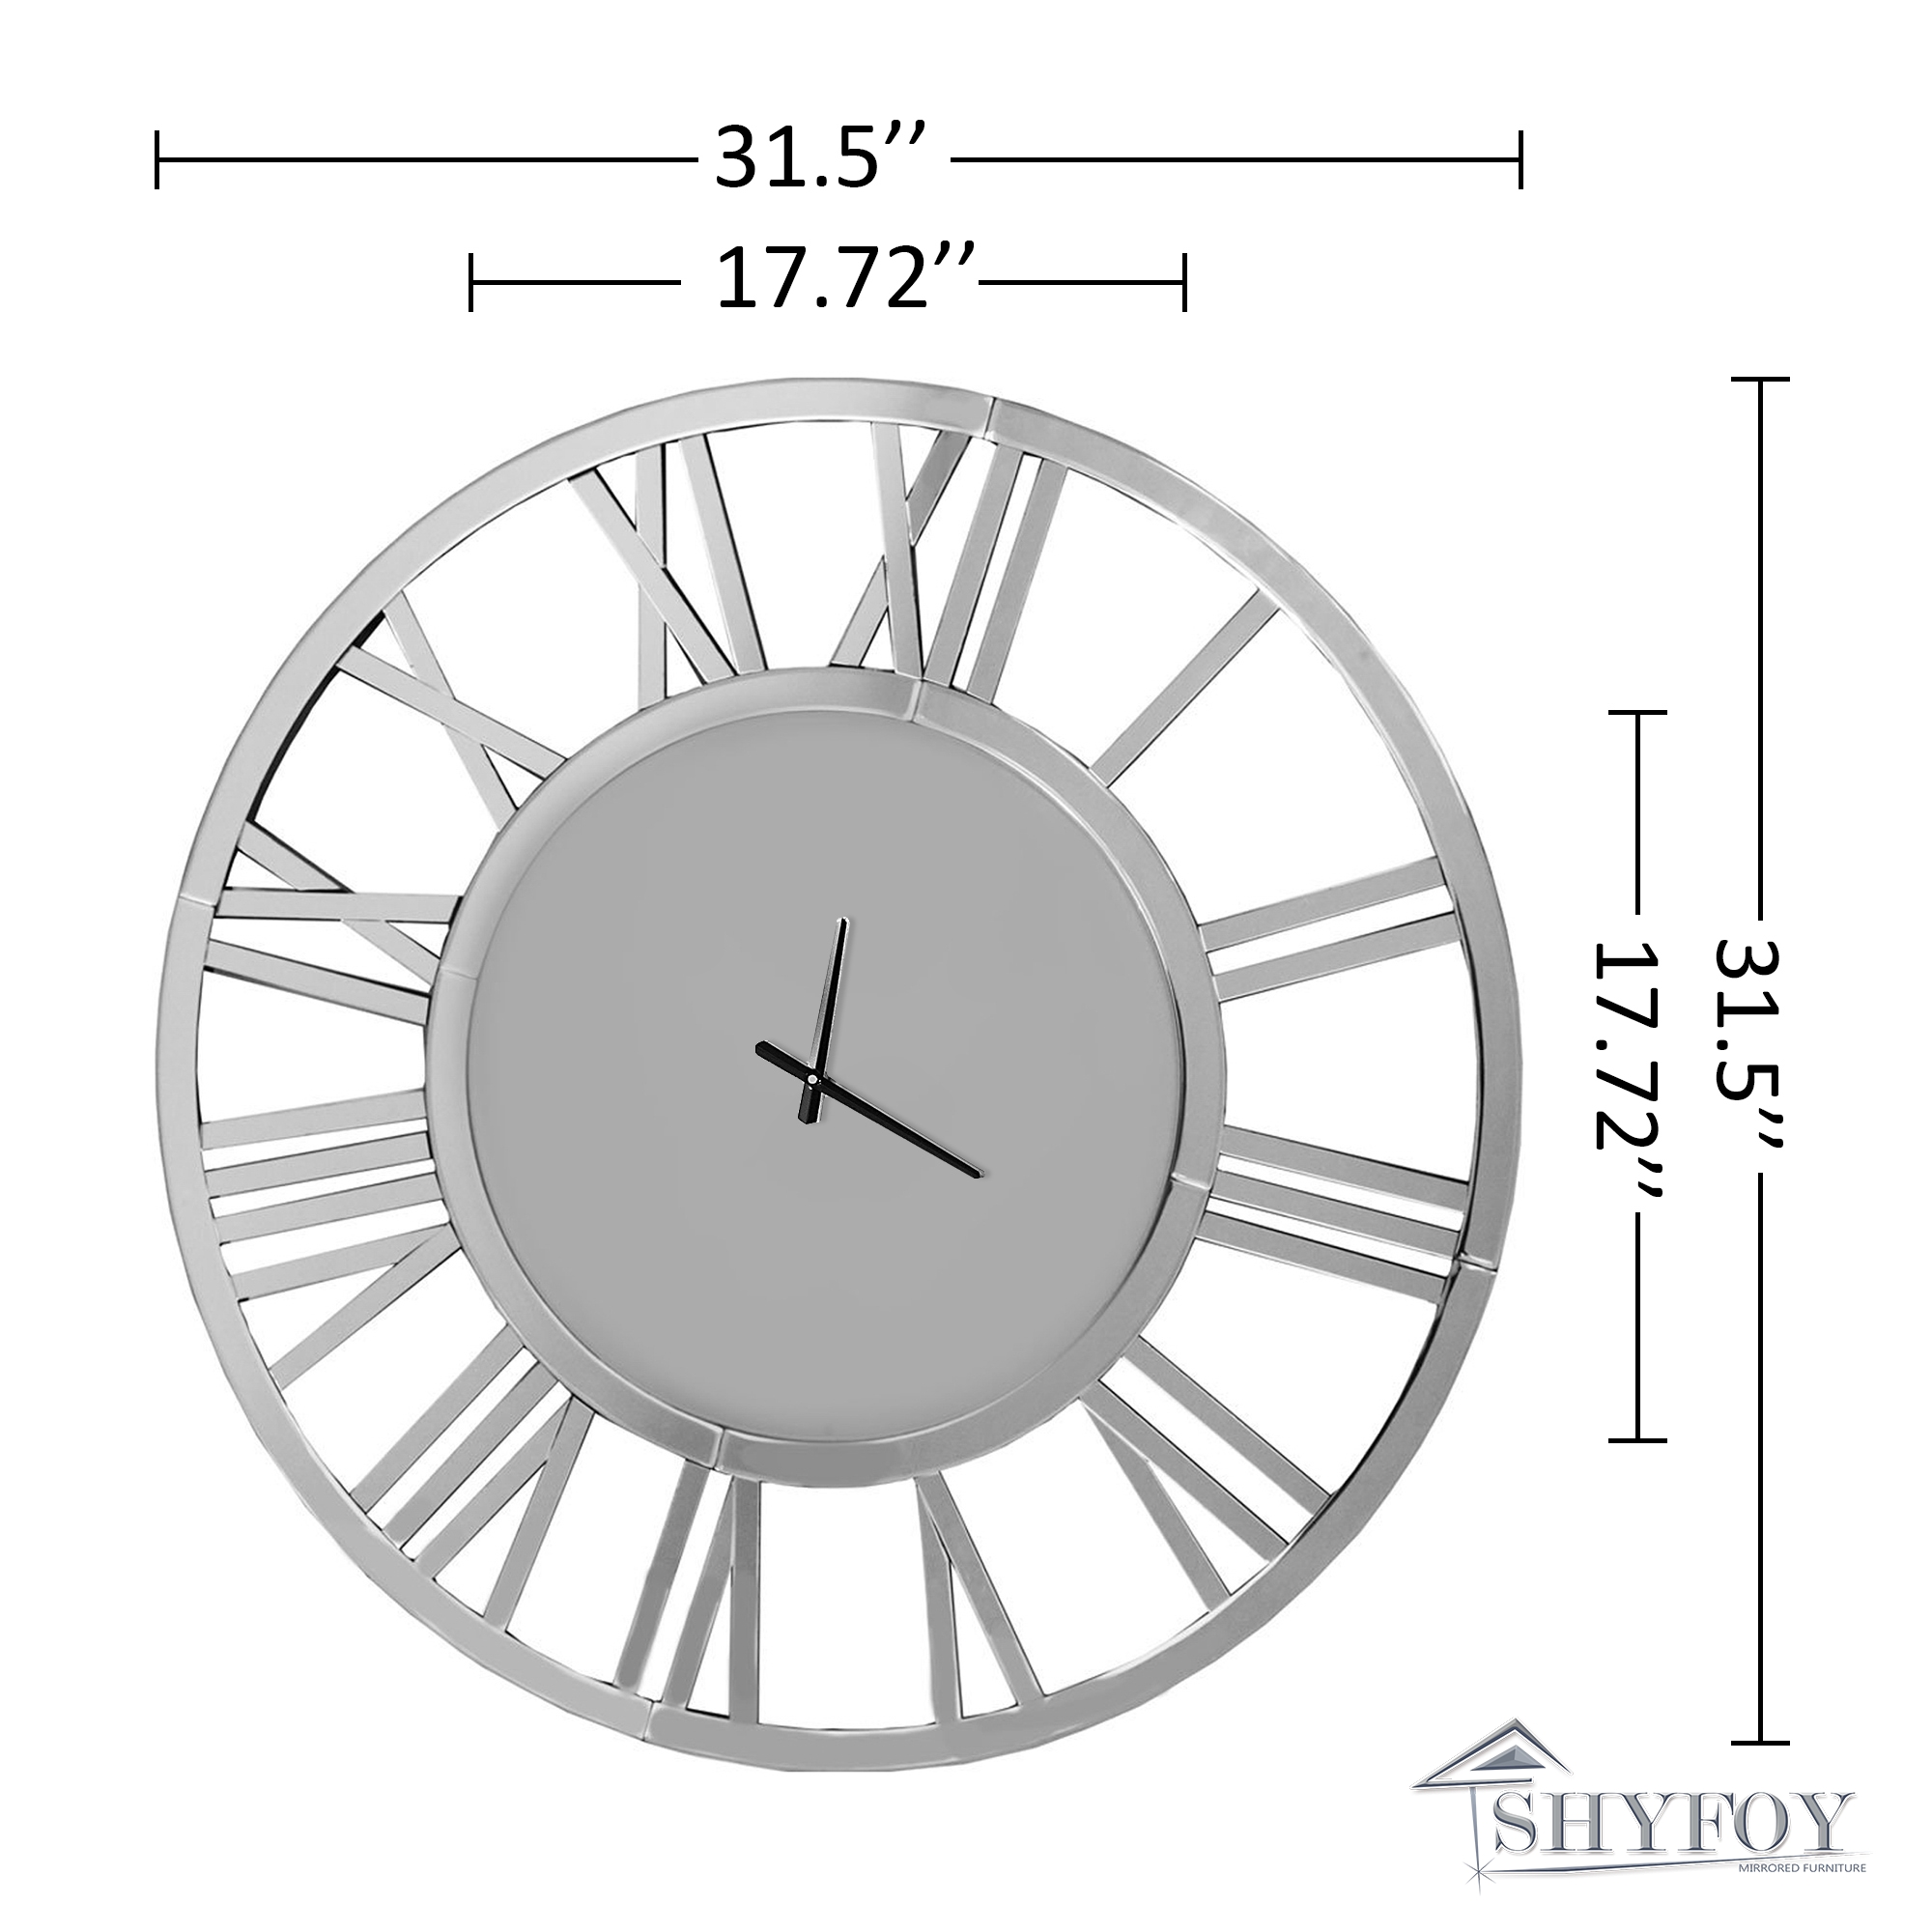 All Mirror Round Roman Numerals Clocks | SHYFOY